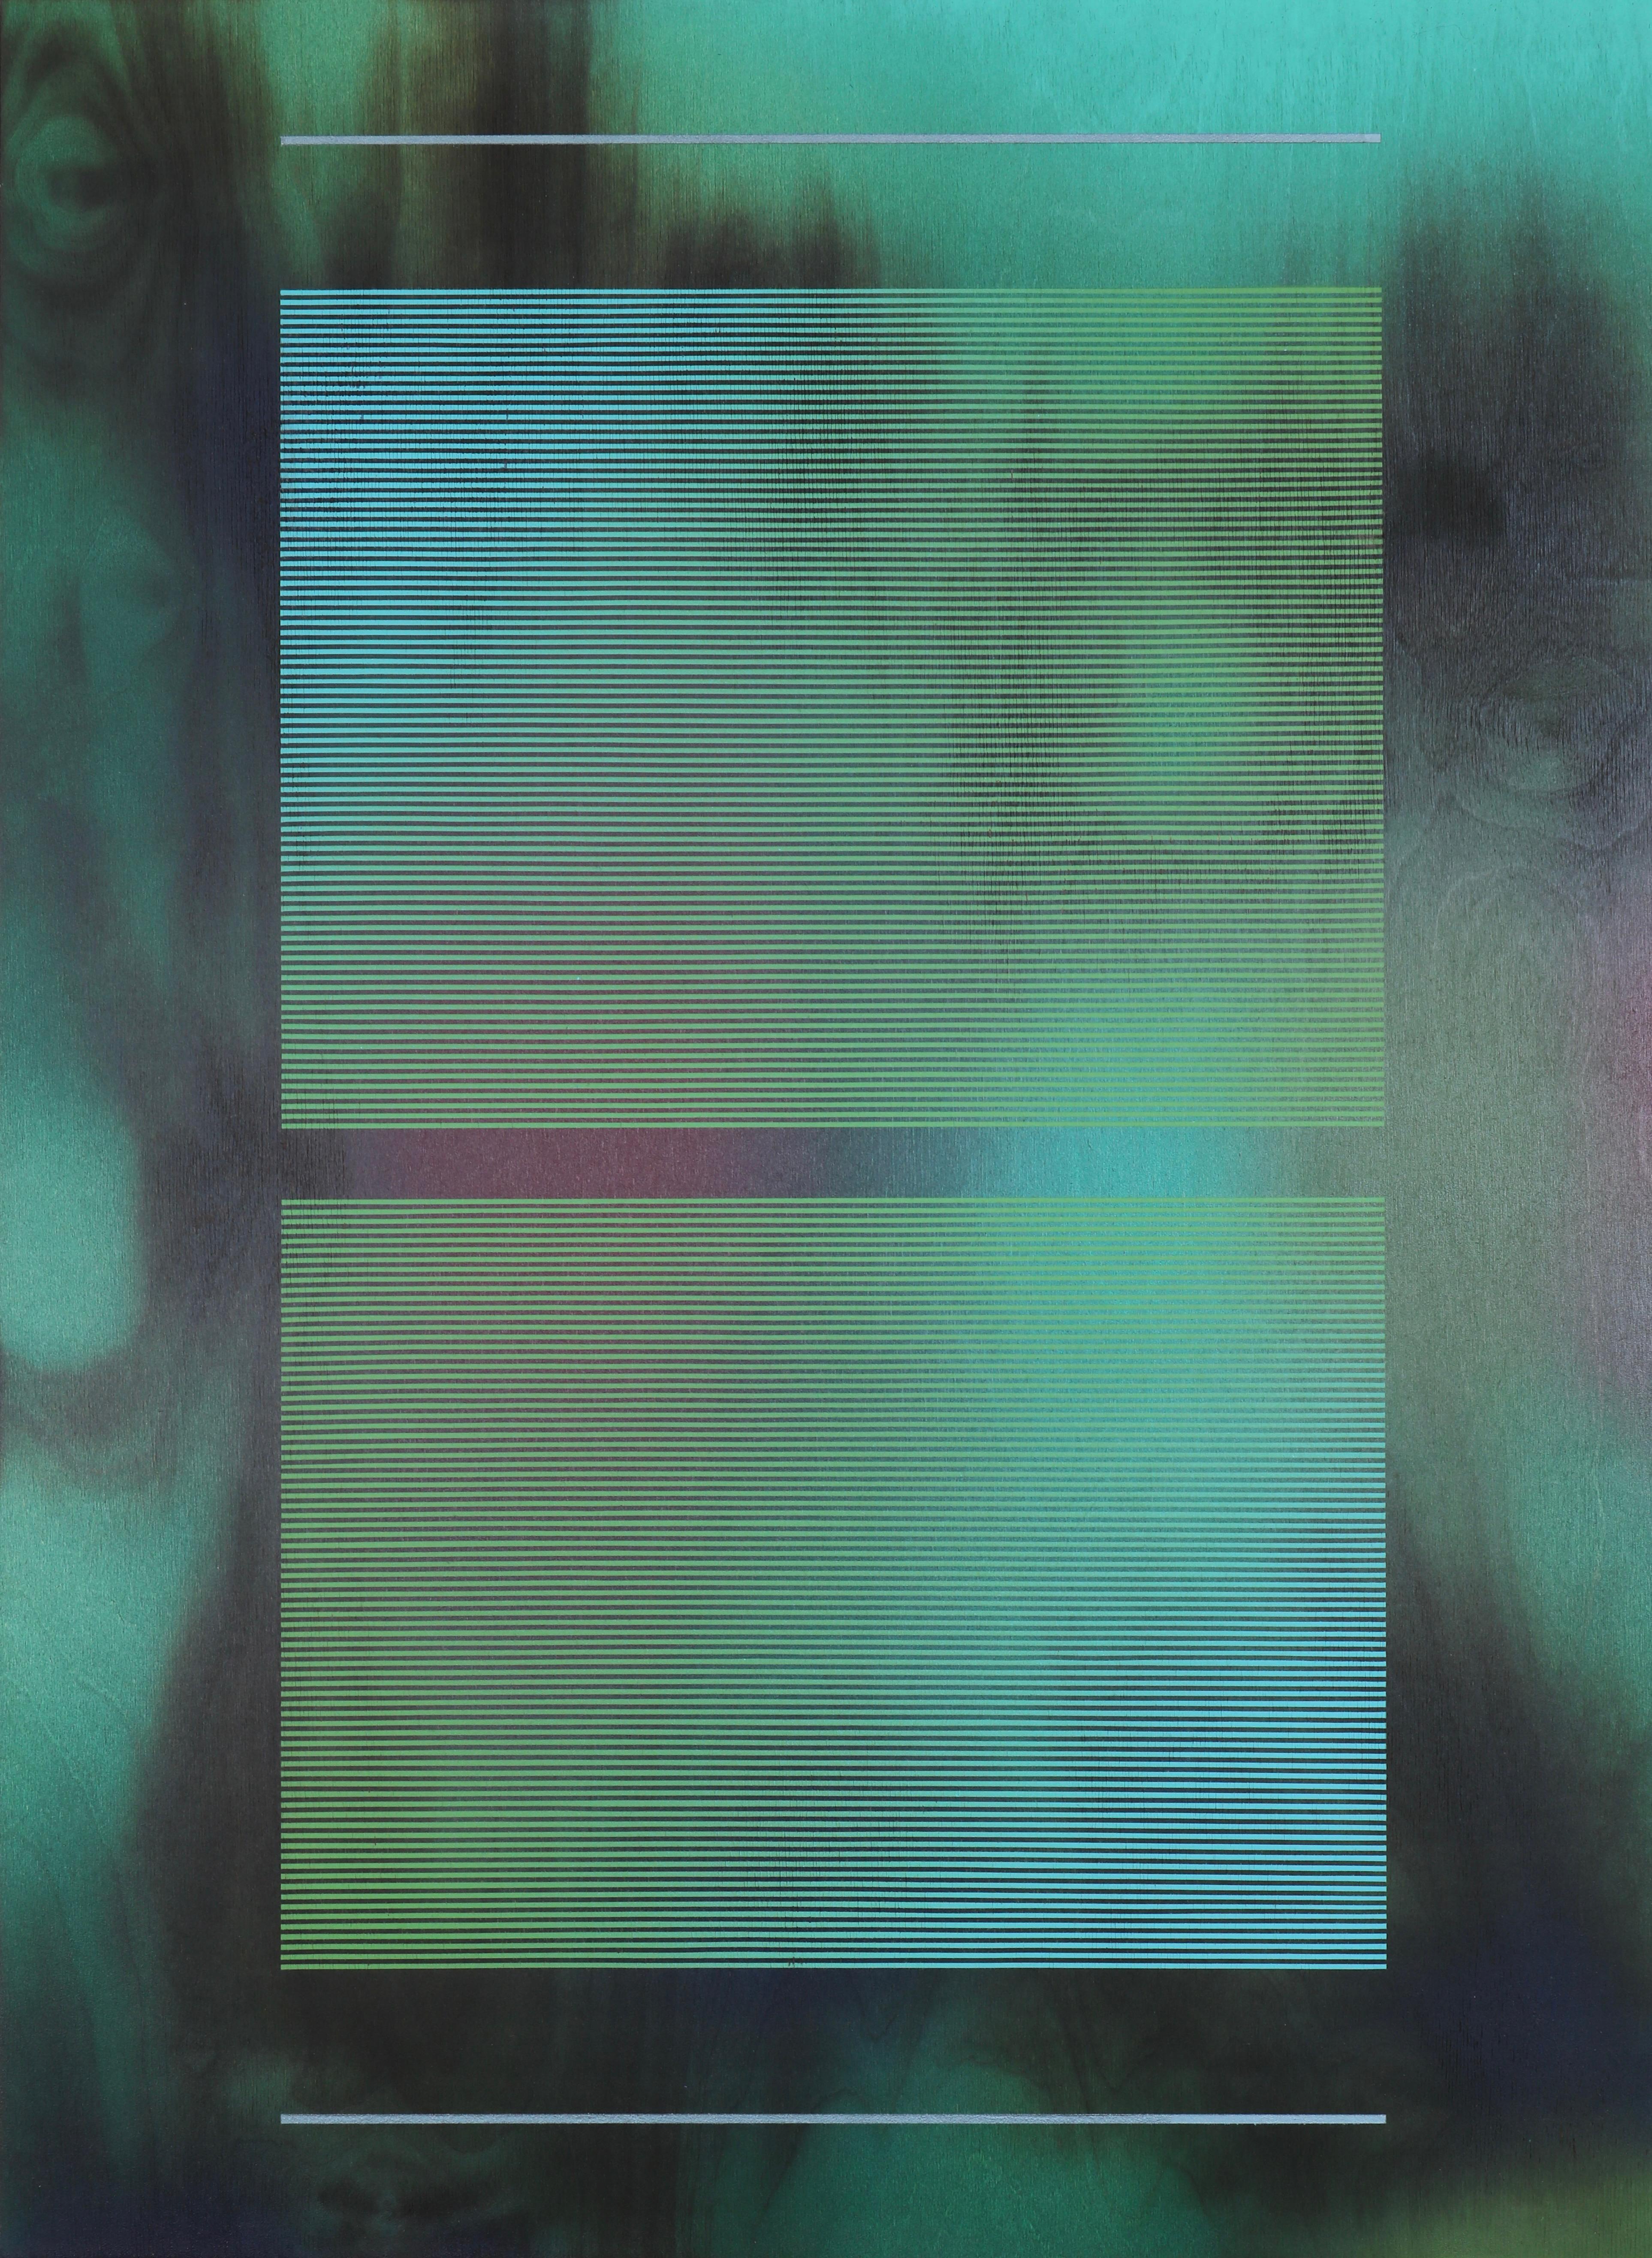 CSW 2024.4  ( Peinture aquatique d'une grille vert artichaut, turquoise et émeraude représentant un mur) - Mixed Media Art de Melisa Taylor Metzger